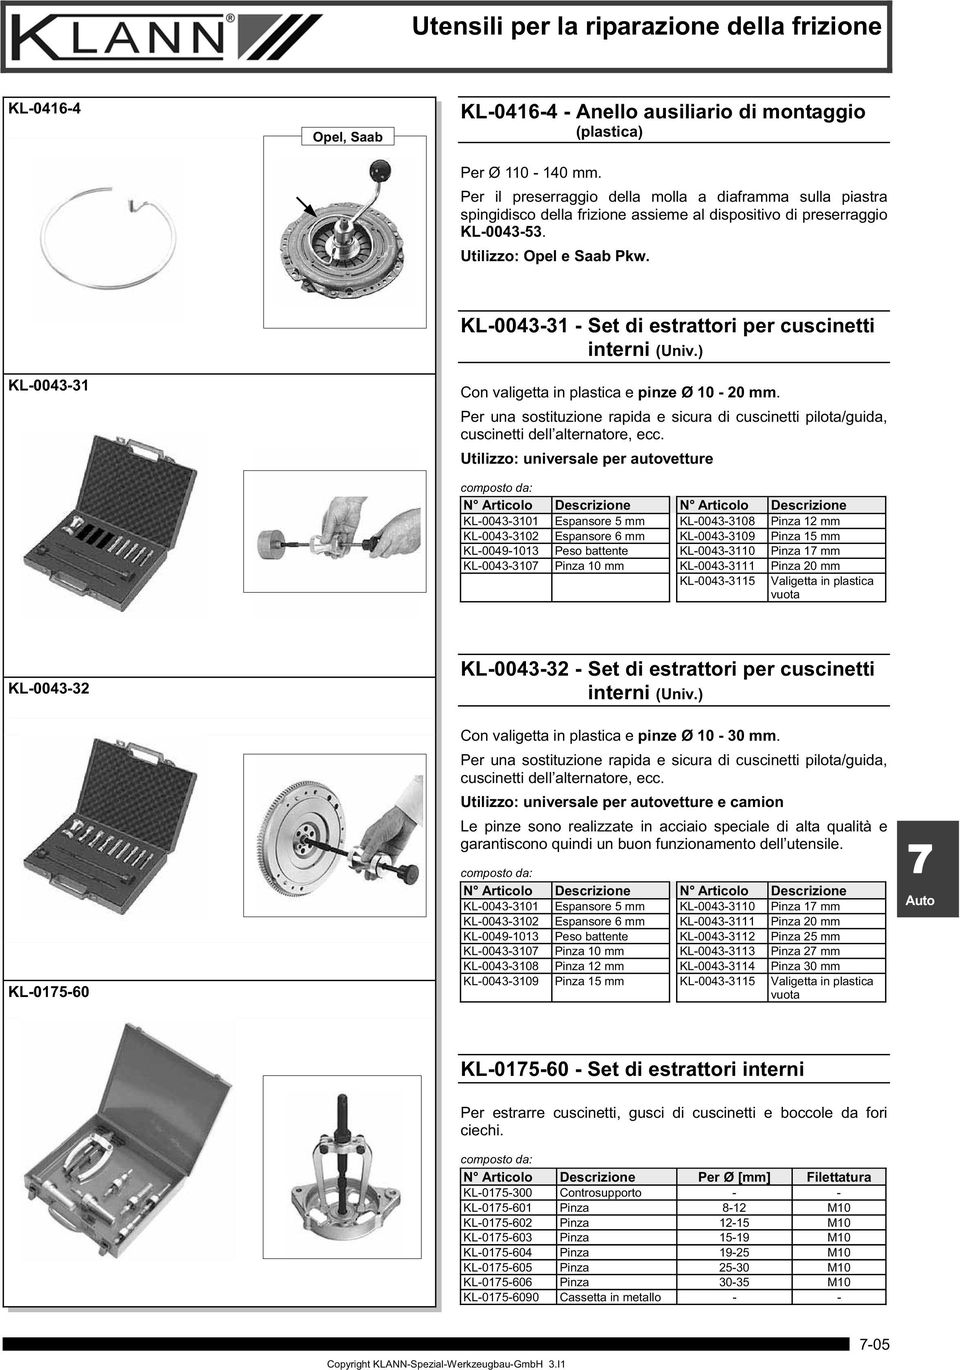 KL-0043-31 KL-0043-31 - Set di estrattori per cuscinetti interni (Univ.) Con valigetta in plastica e pinze Ø 10-20 mm.